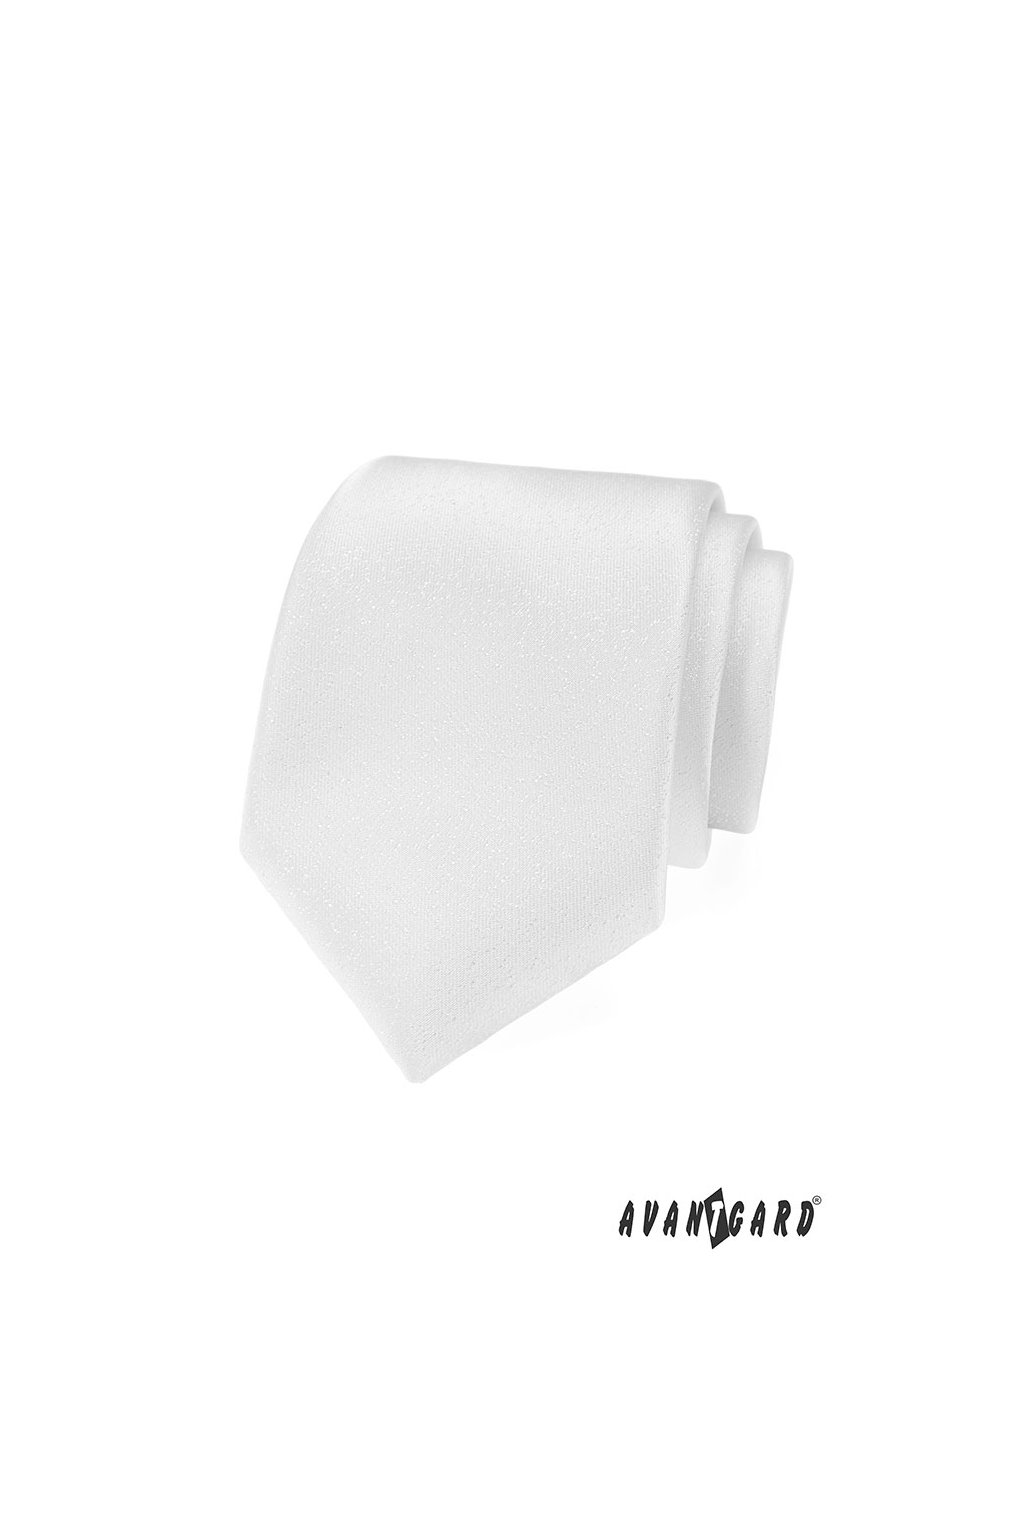 Bílá kravata s decentním lesklým vzorem